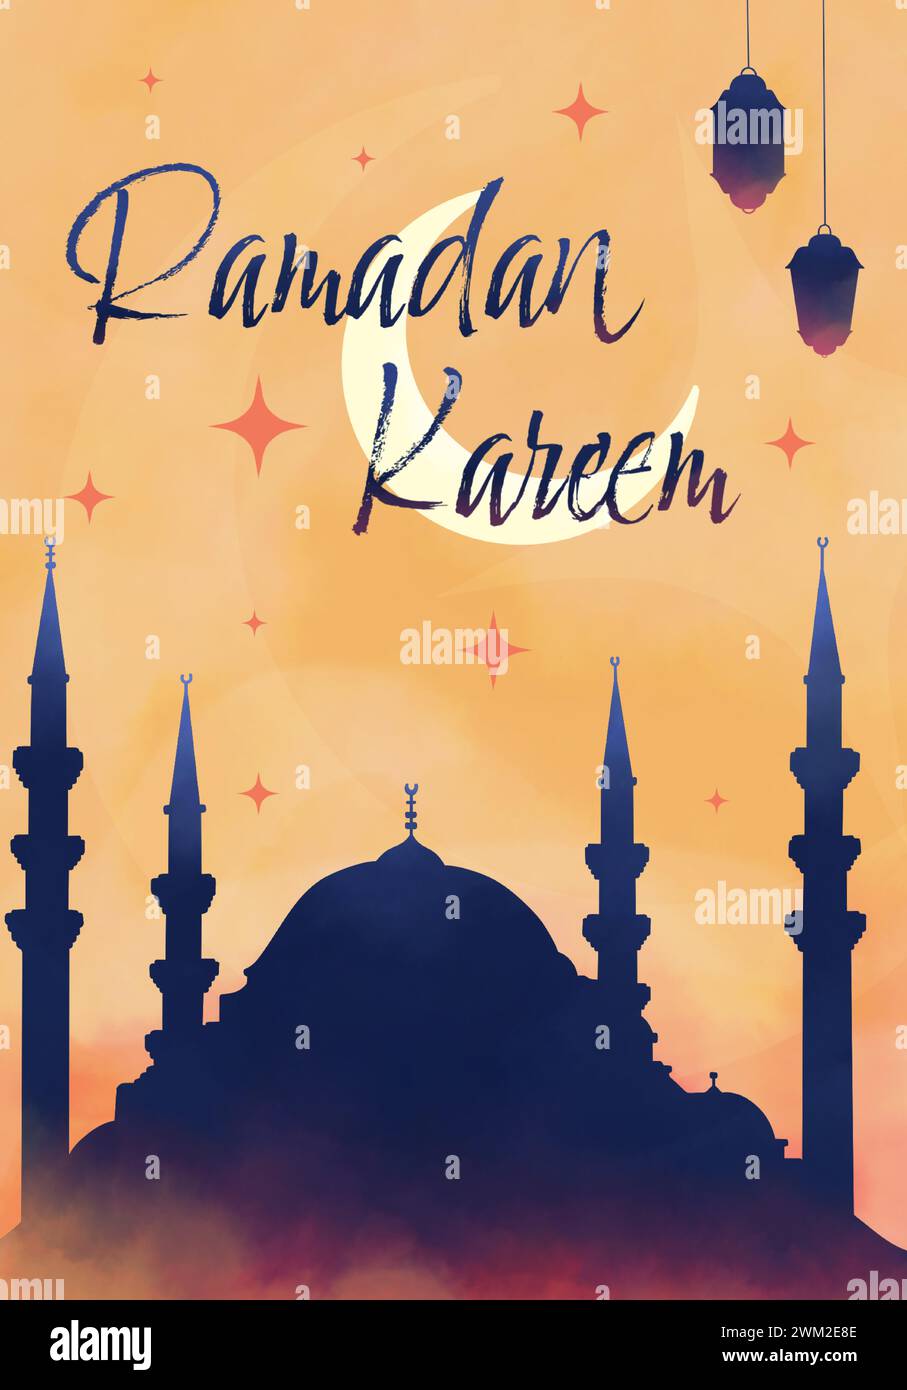 Ramadan-Grußkarte, Ramadan Kareem. Islamischer Hintergrund mit Moschee, Laternen und Halbmond Stock Vektor